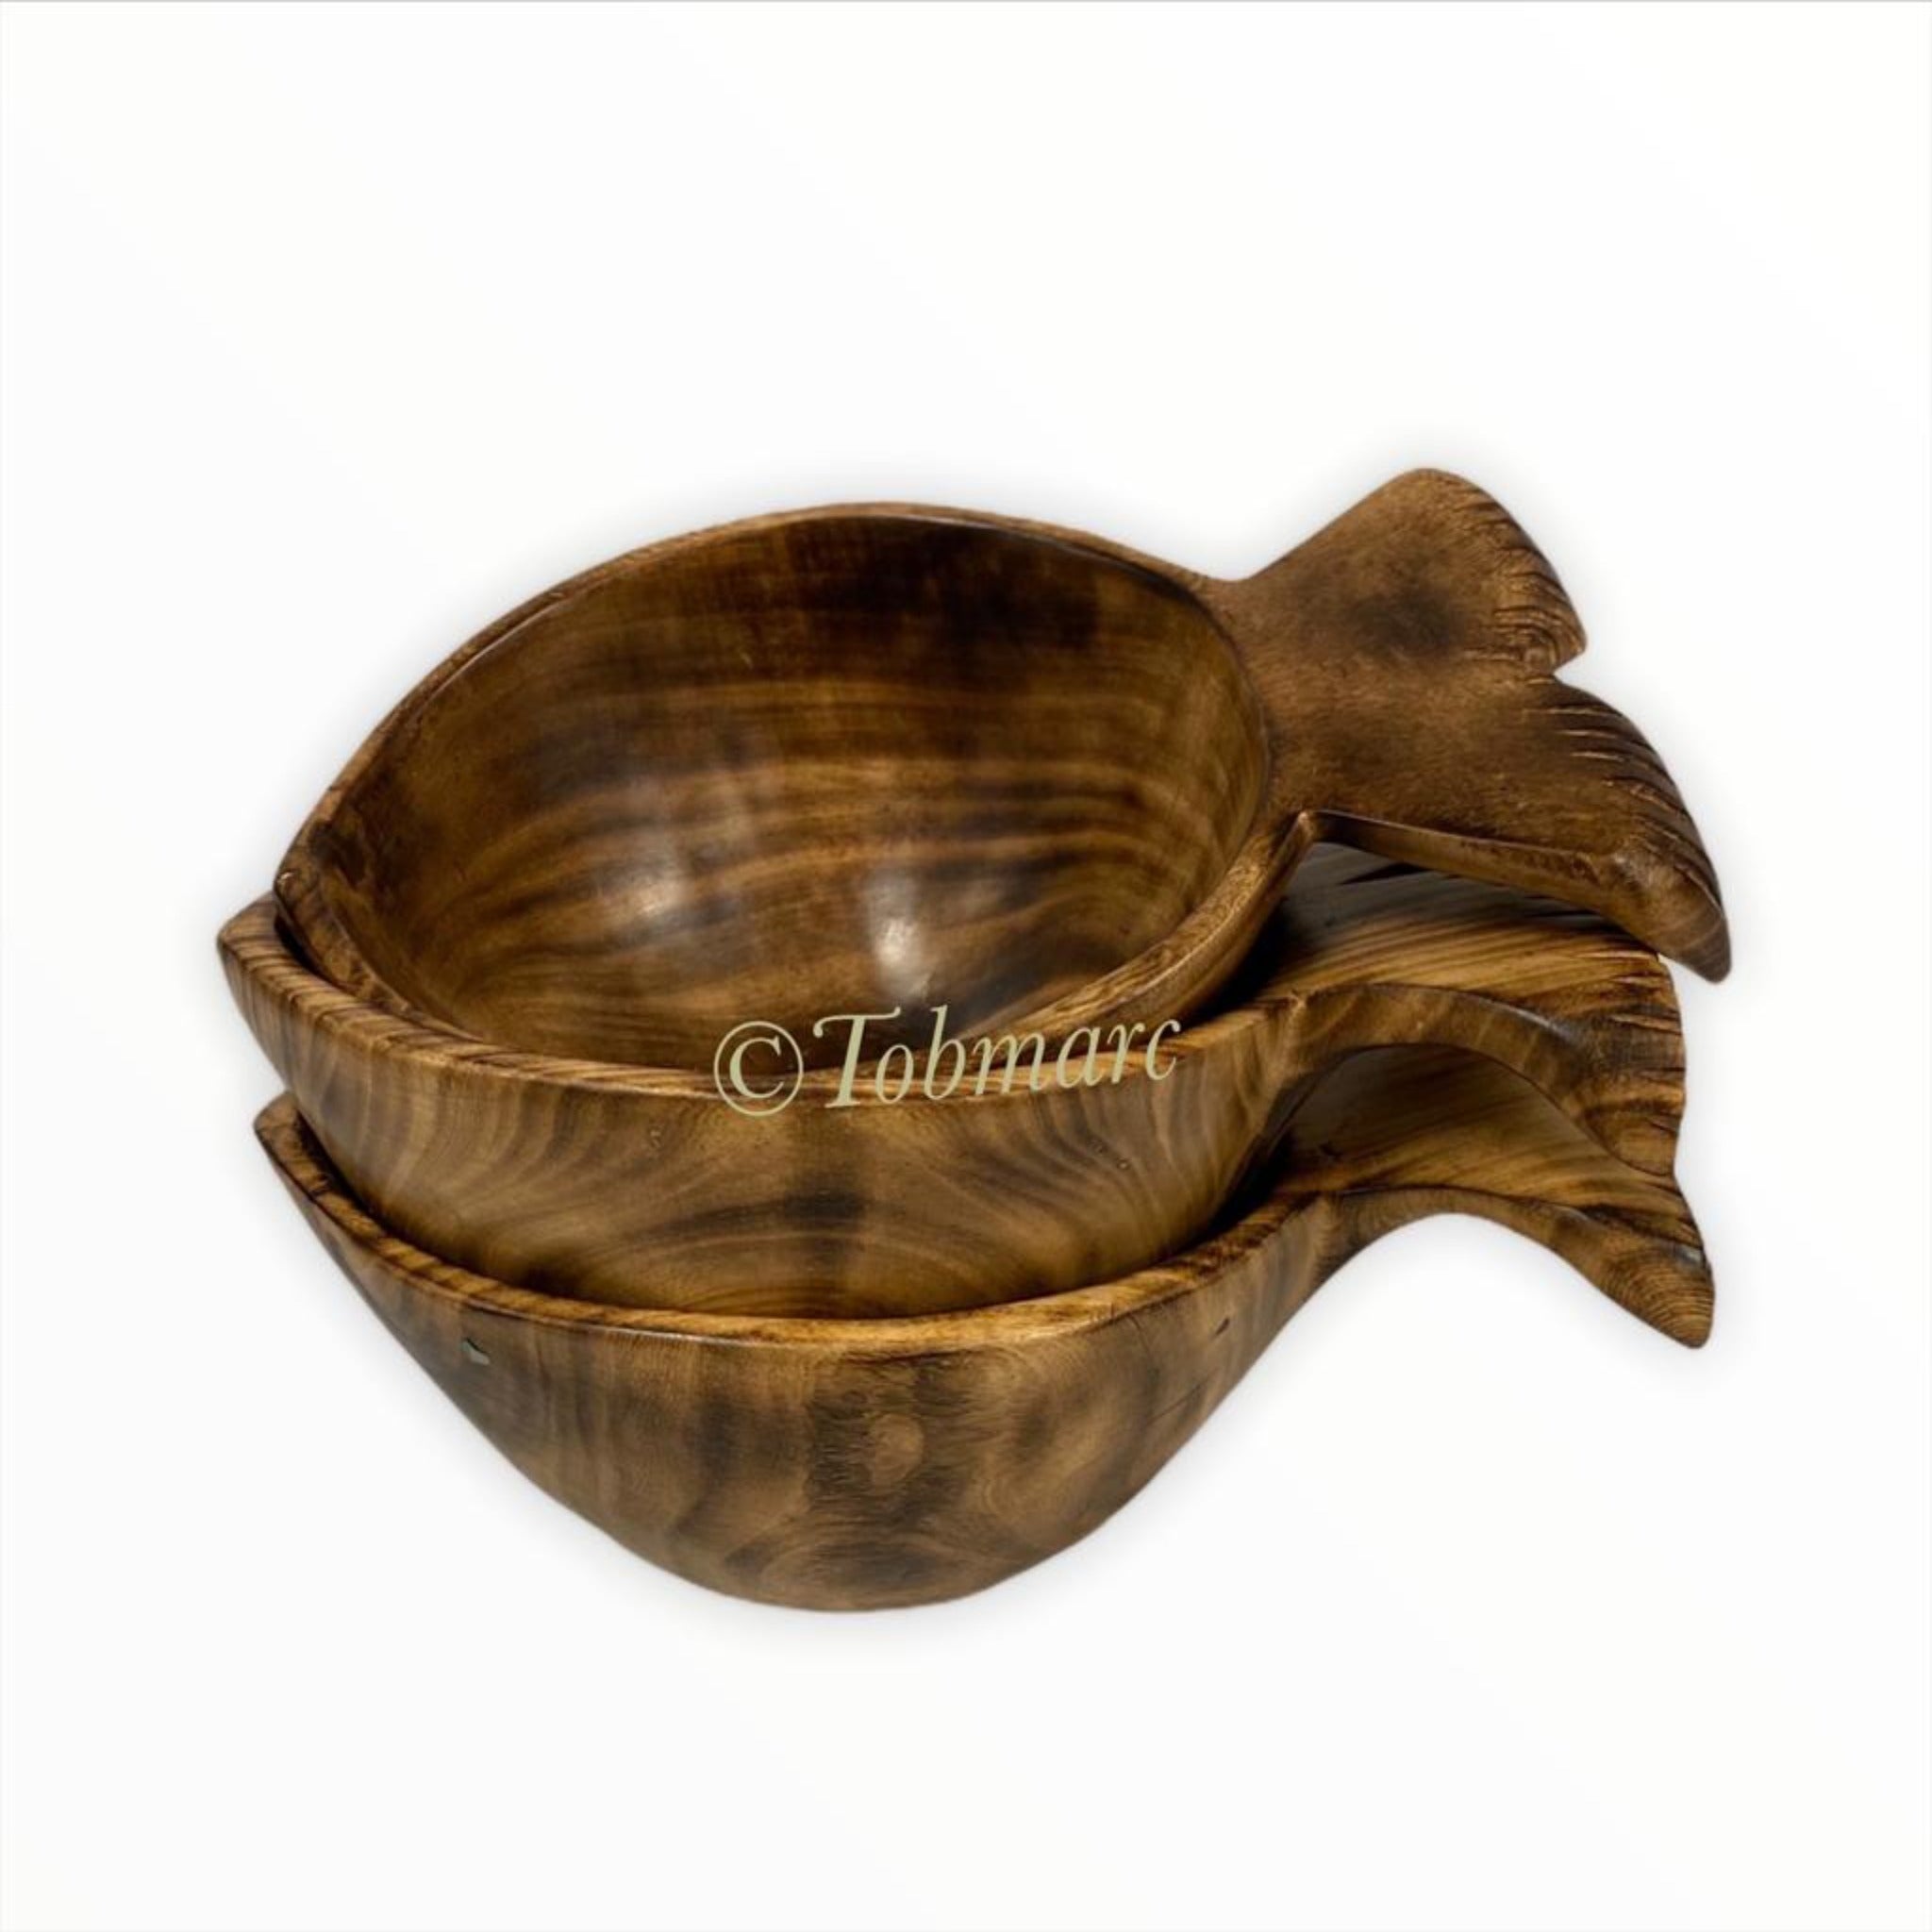 Tobmarc Home Decor & Gifts  Basket Vintage Hand-carved  Fish Shaped, Olive wood Fish Bowl